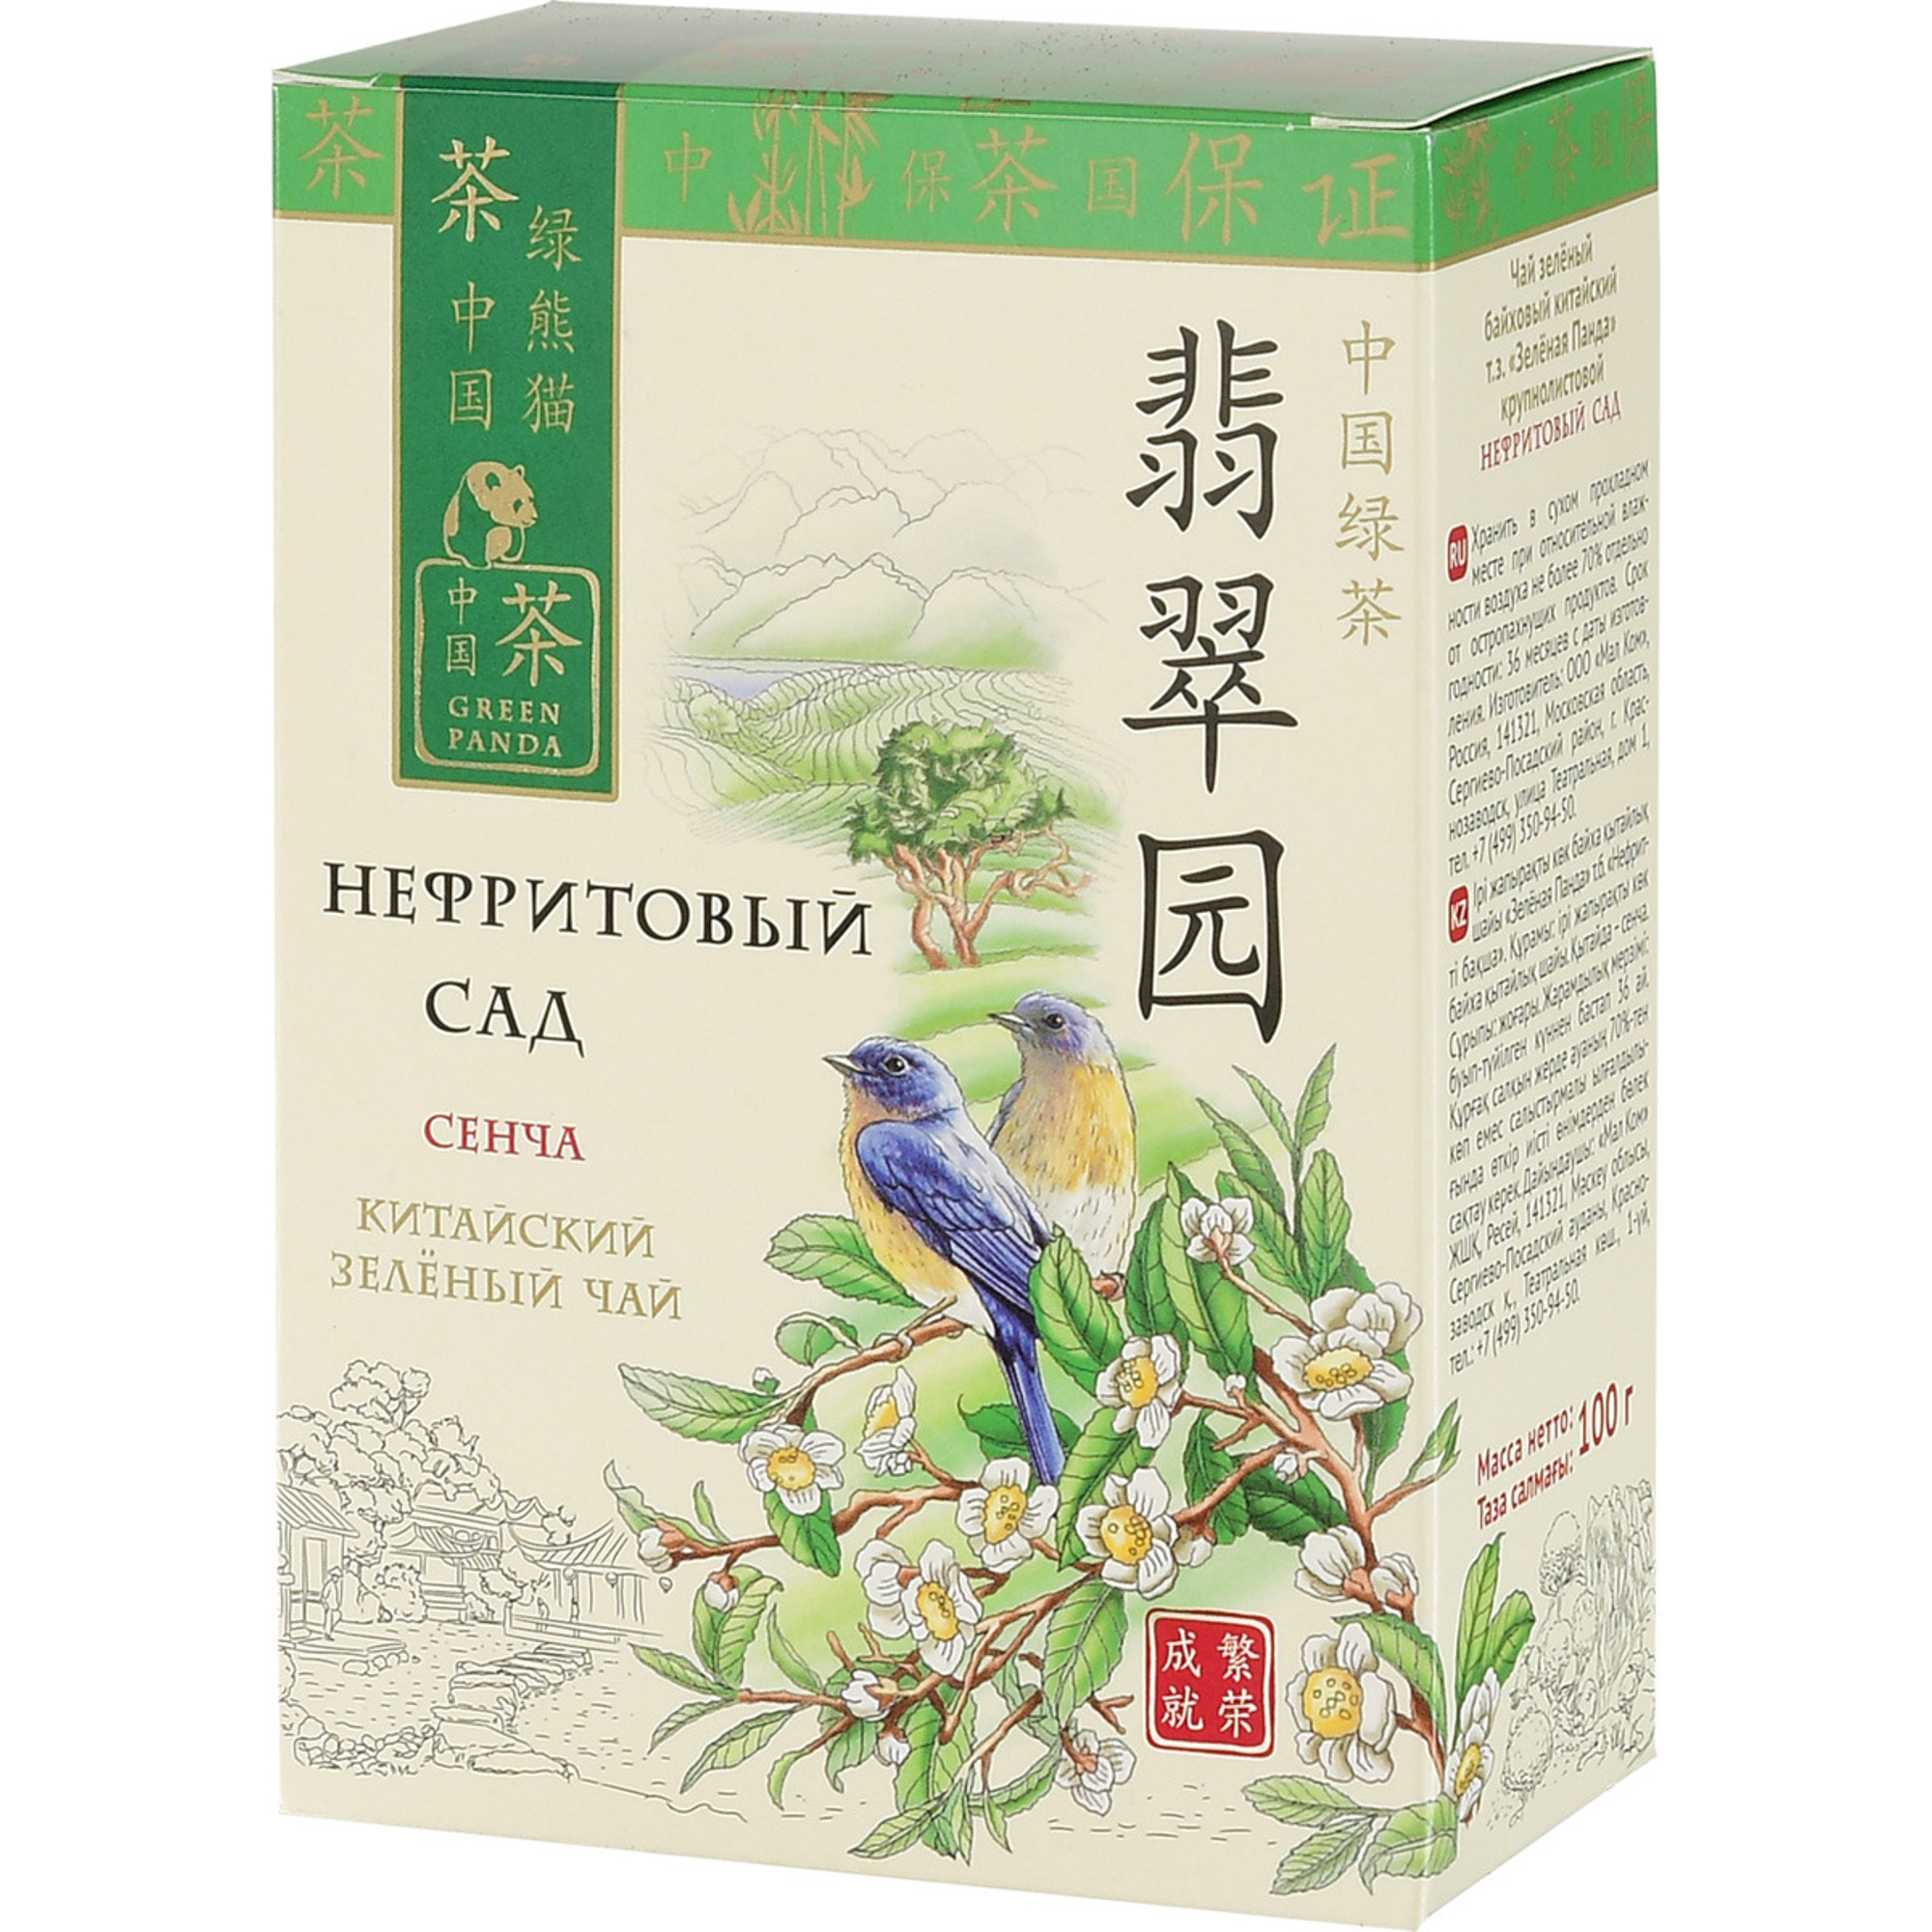 Чай зеленый Зеленая Панда Нефритовый сад Сенча листовой 100 г чай pausa зеленый сенча 100 г мягкая упаковка